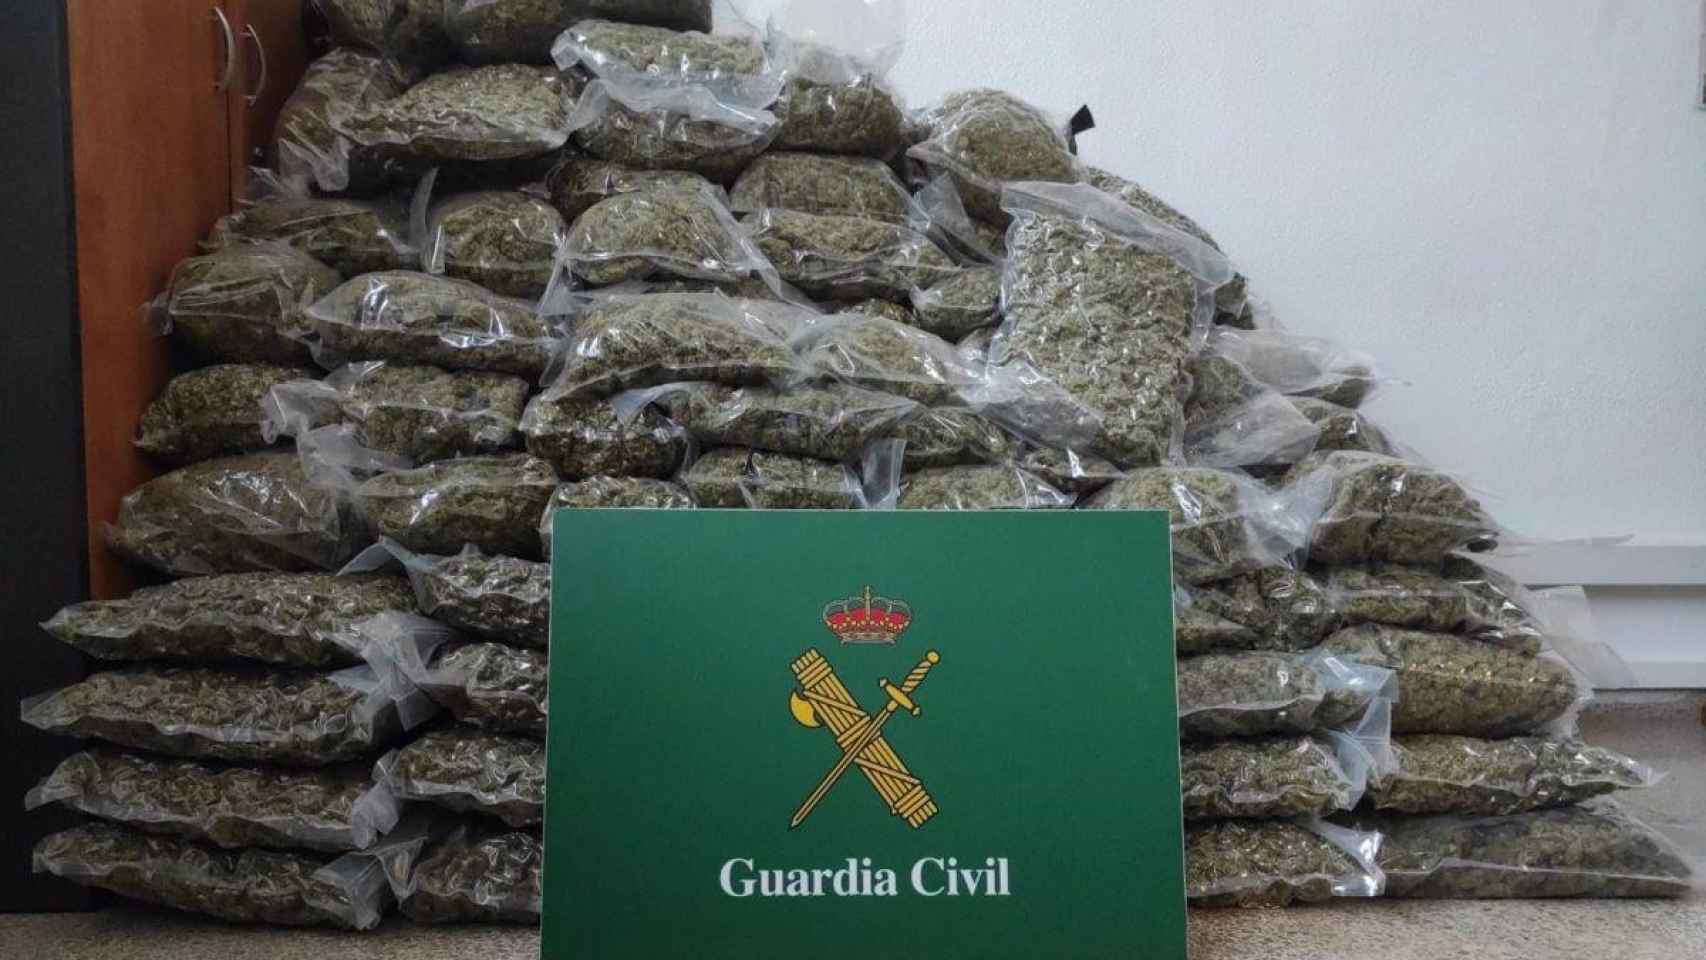 Imagen de los 179 kilos de marihuana incautada en La Jonquera / GUARDIA CIVIL